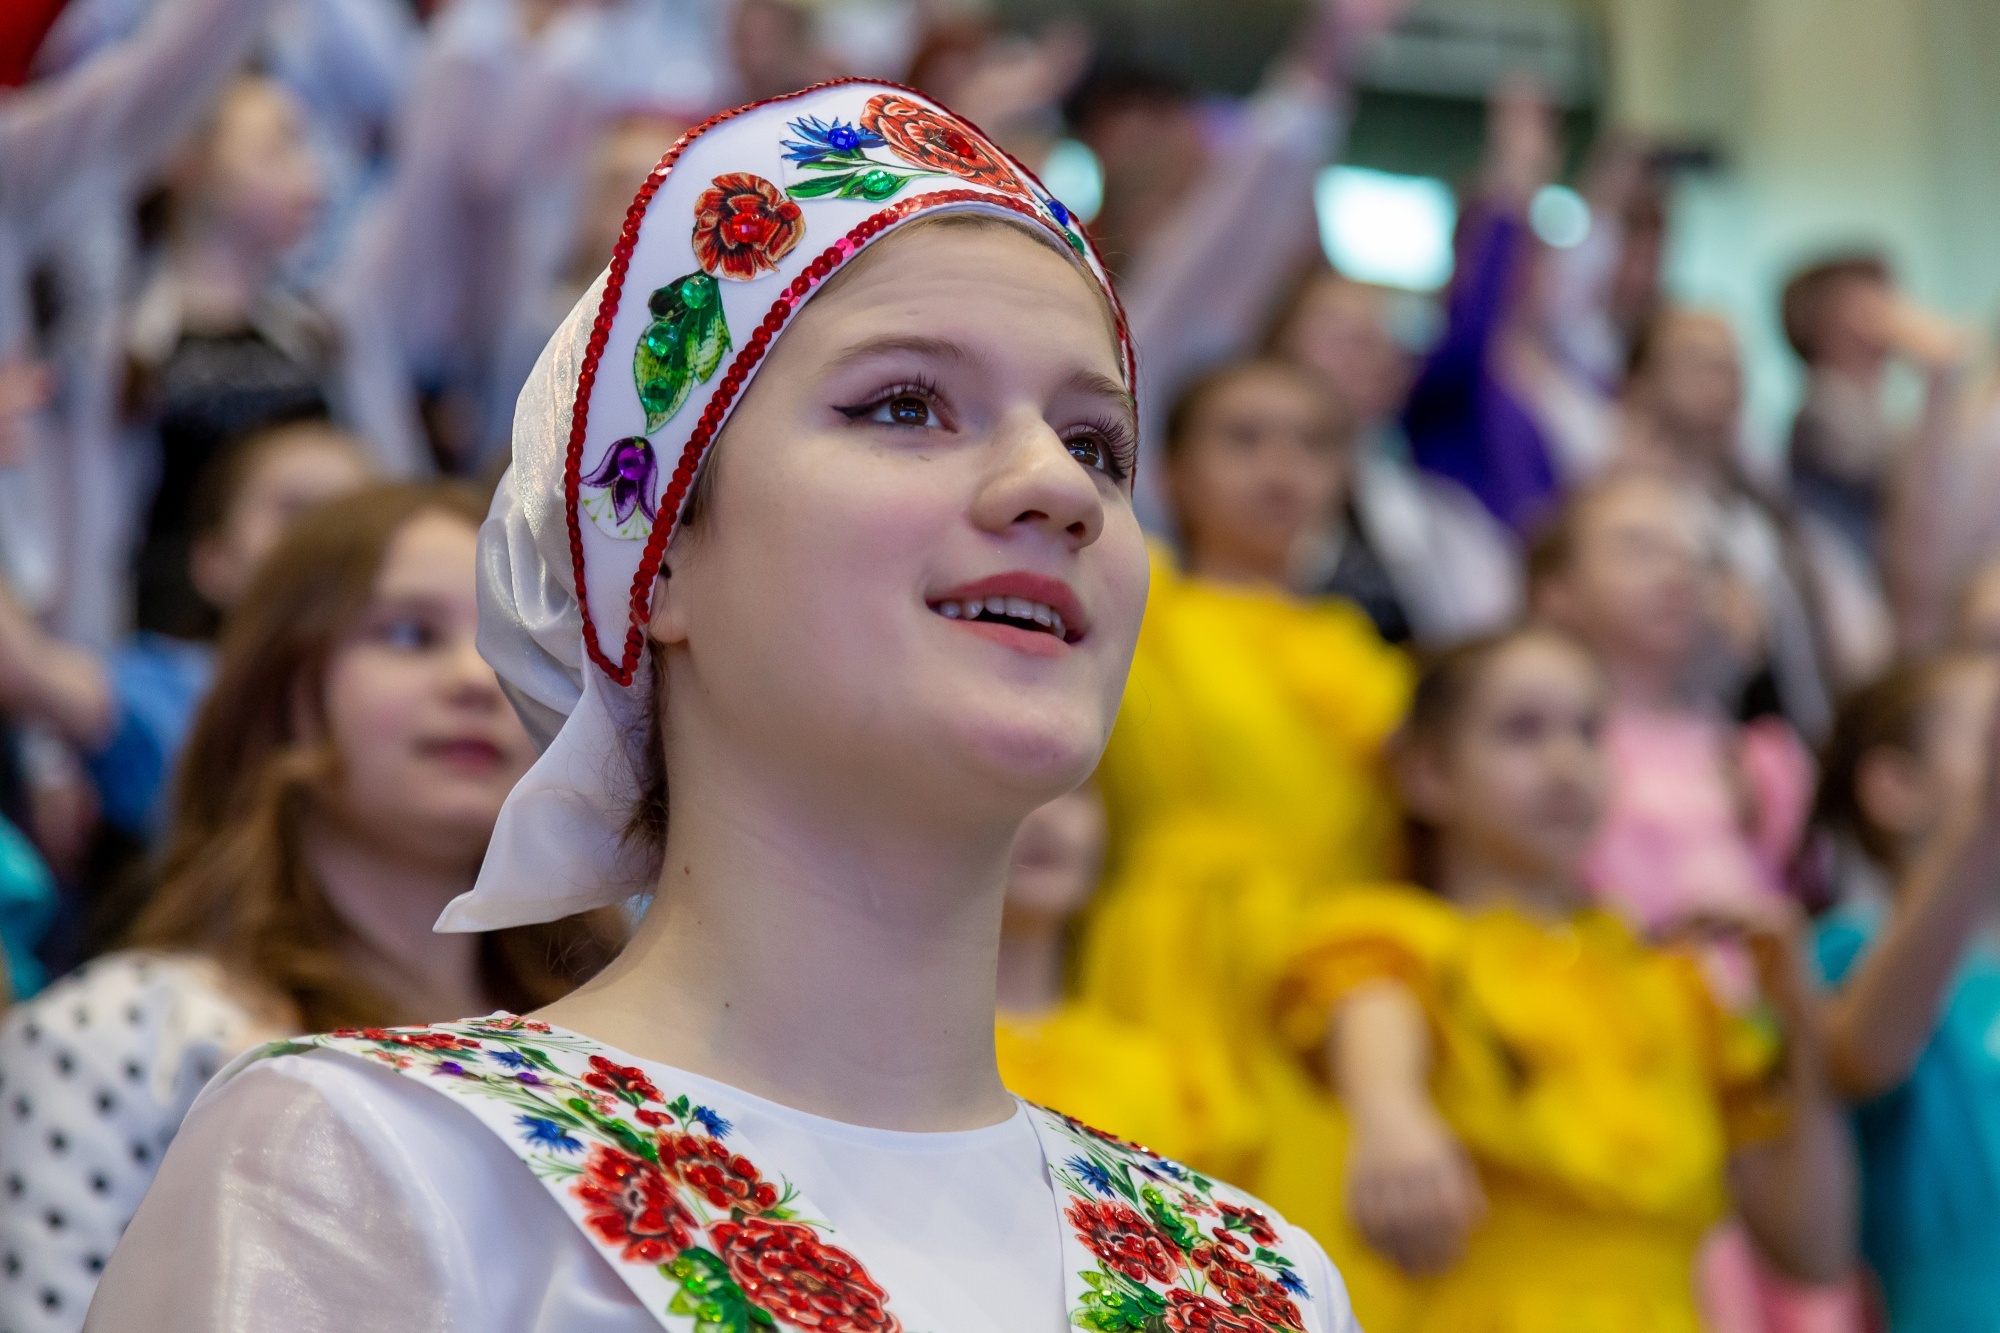 Всероссийский конкурс хоровых и вокальных коллективов собрал рекордное количество заявок